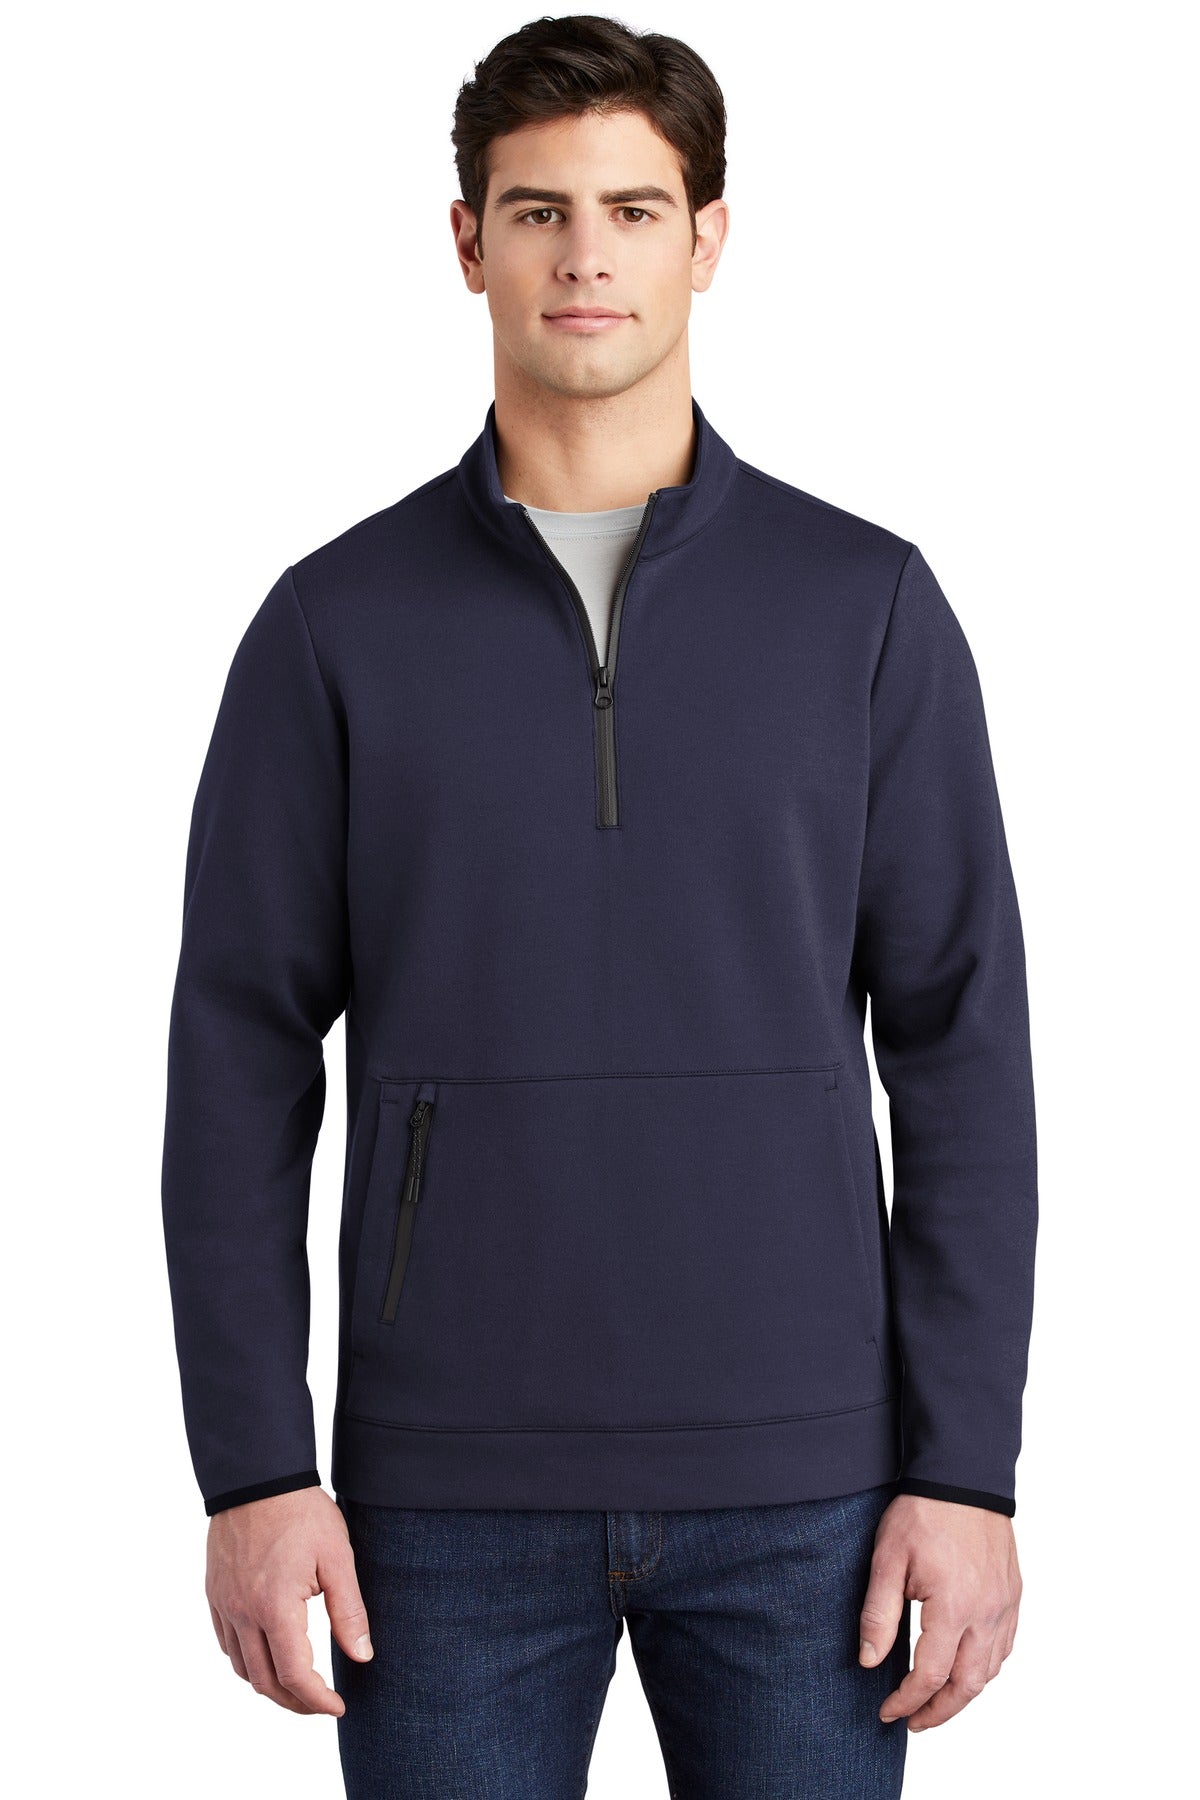 Sweatshirts/Fleece Navy Sport-Tek